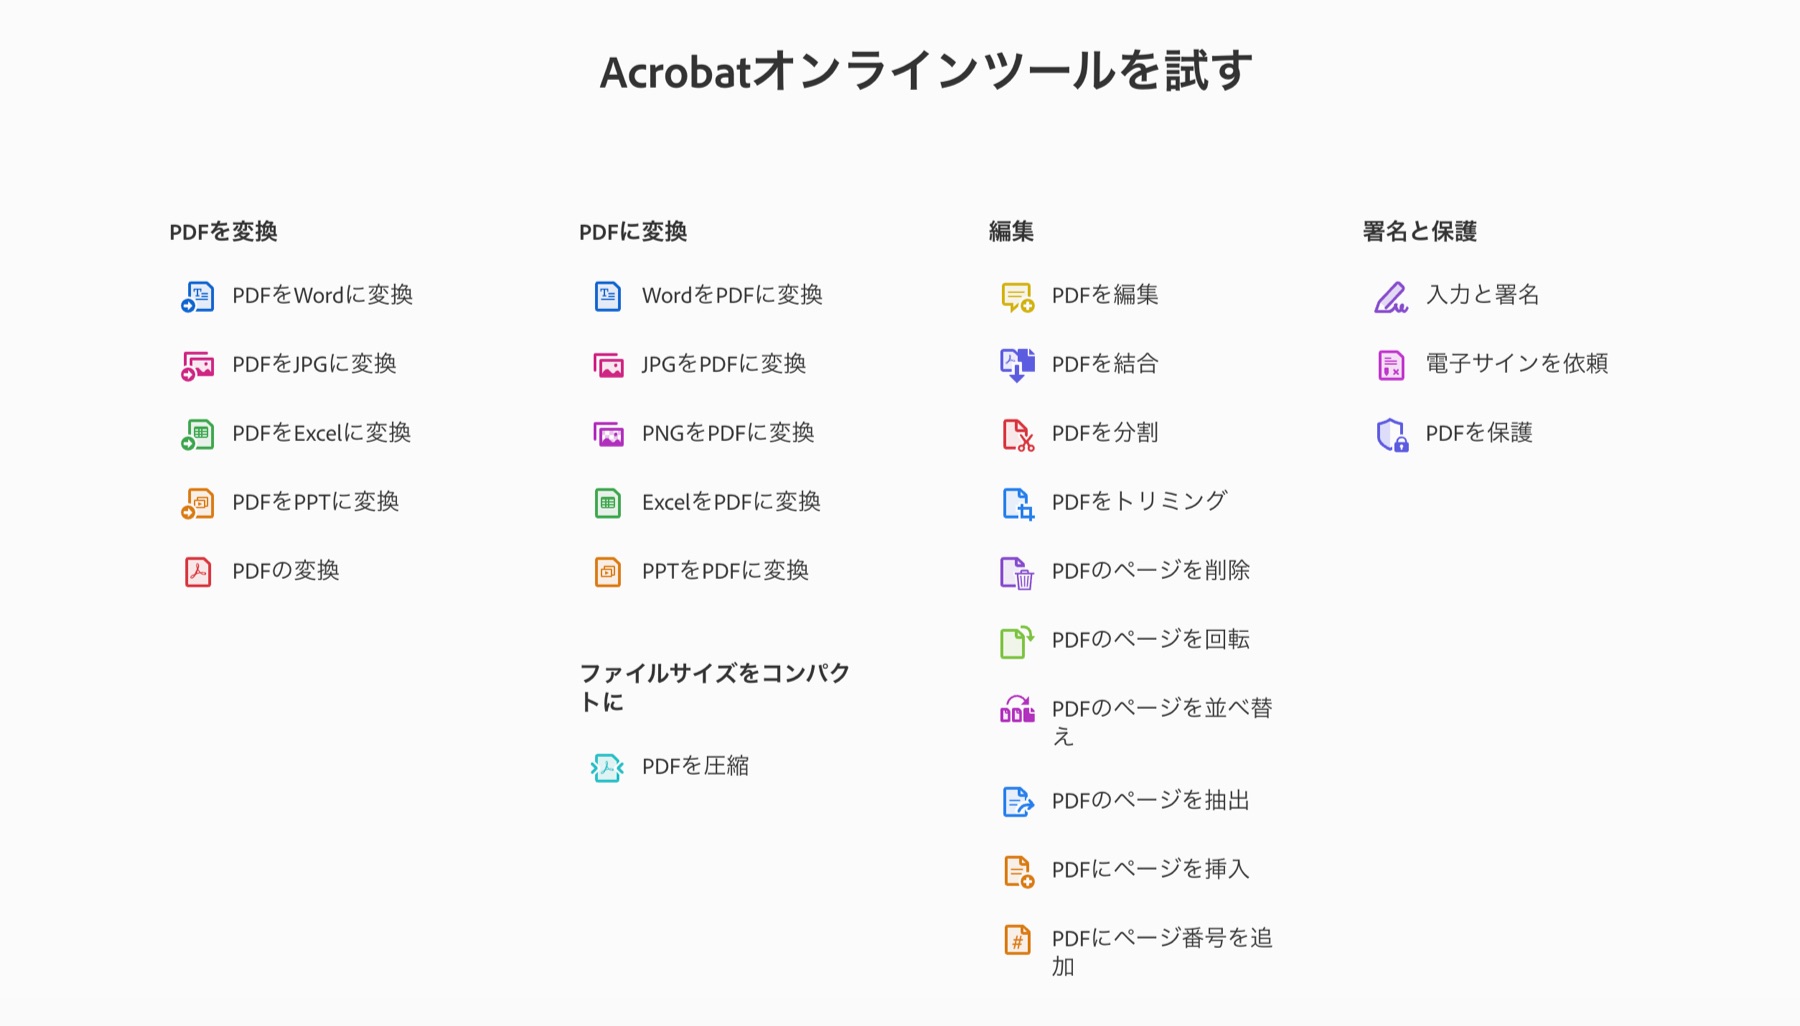 Adobe Acrobat オンラインツールでできること